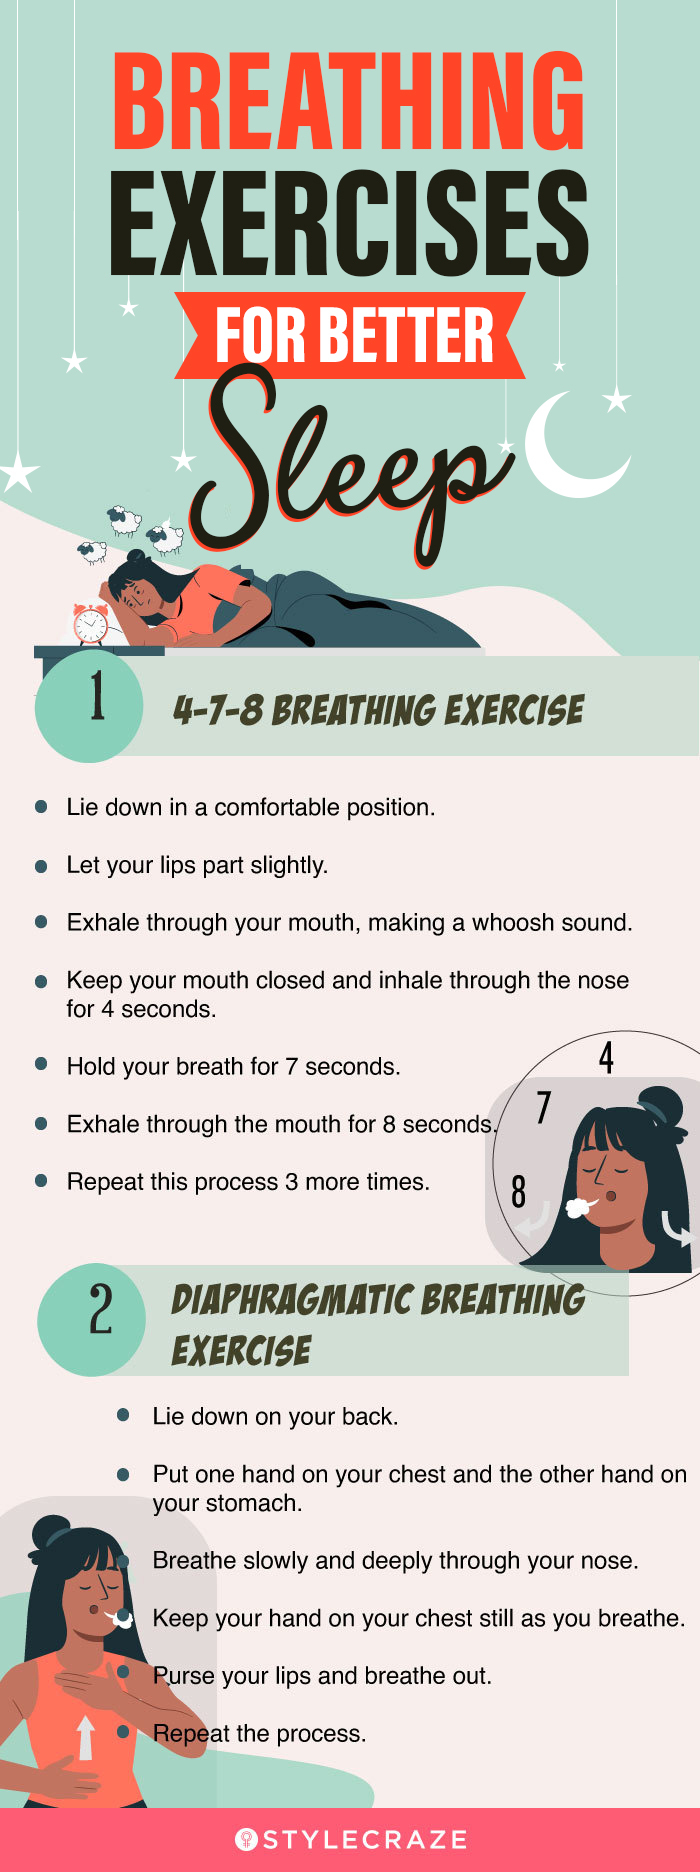 breathing exercises for better sleep [infographic]